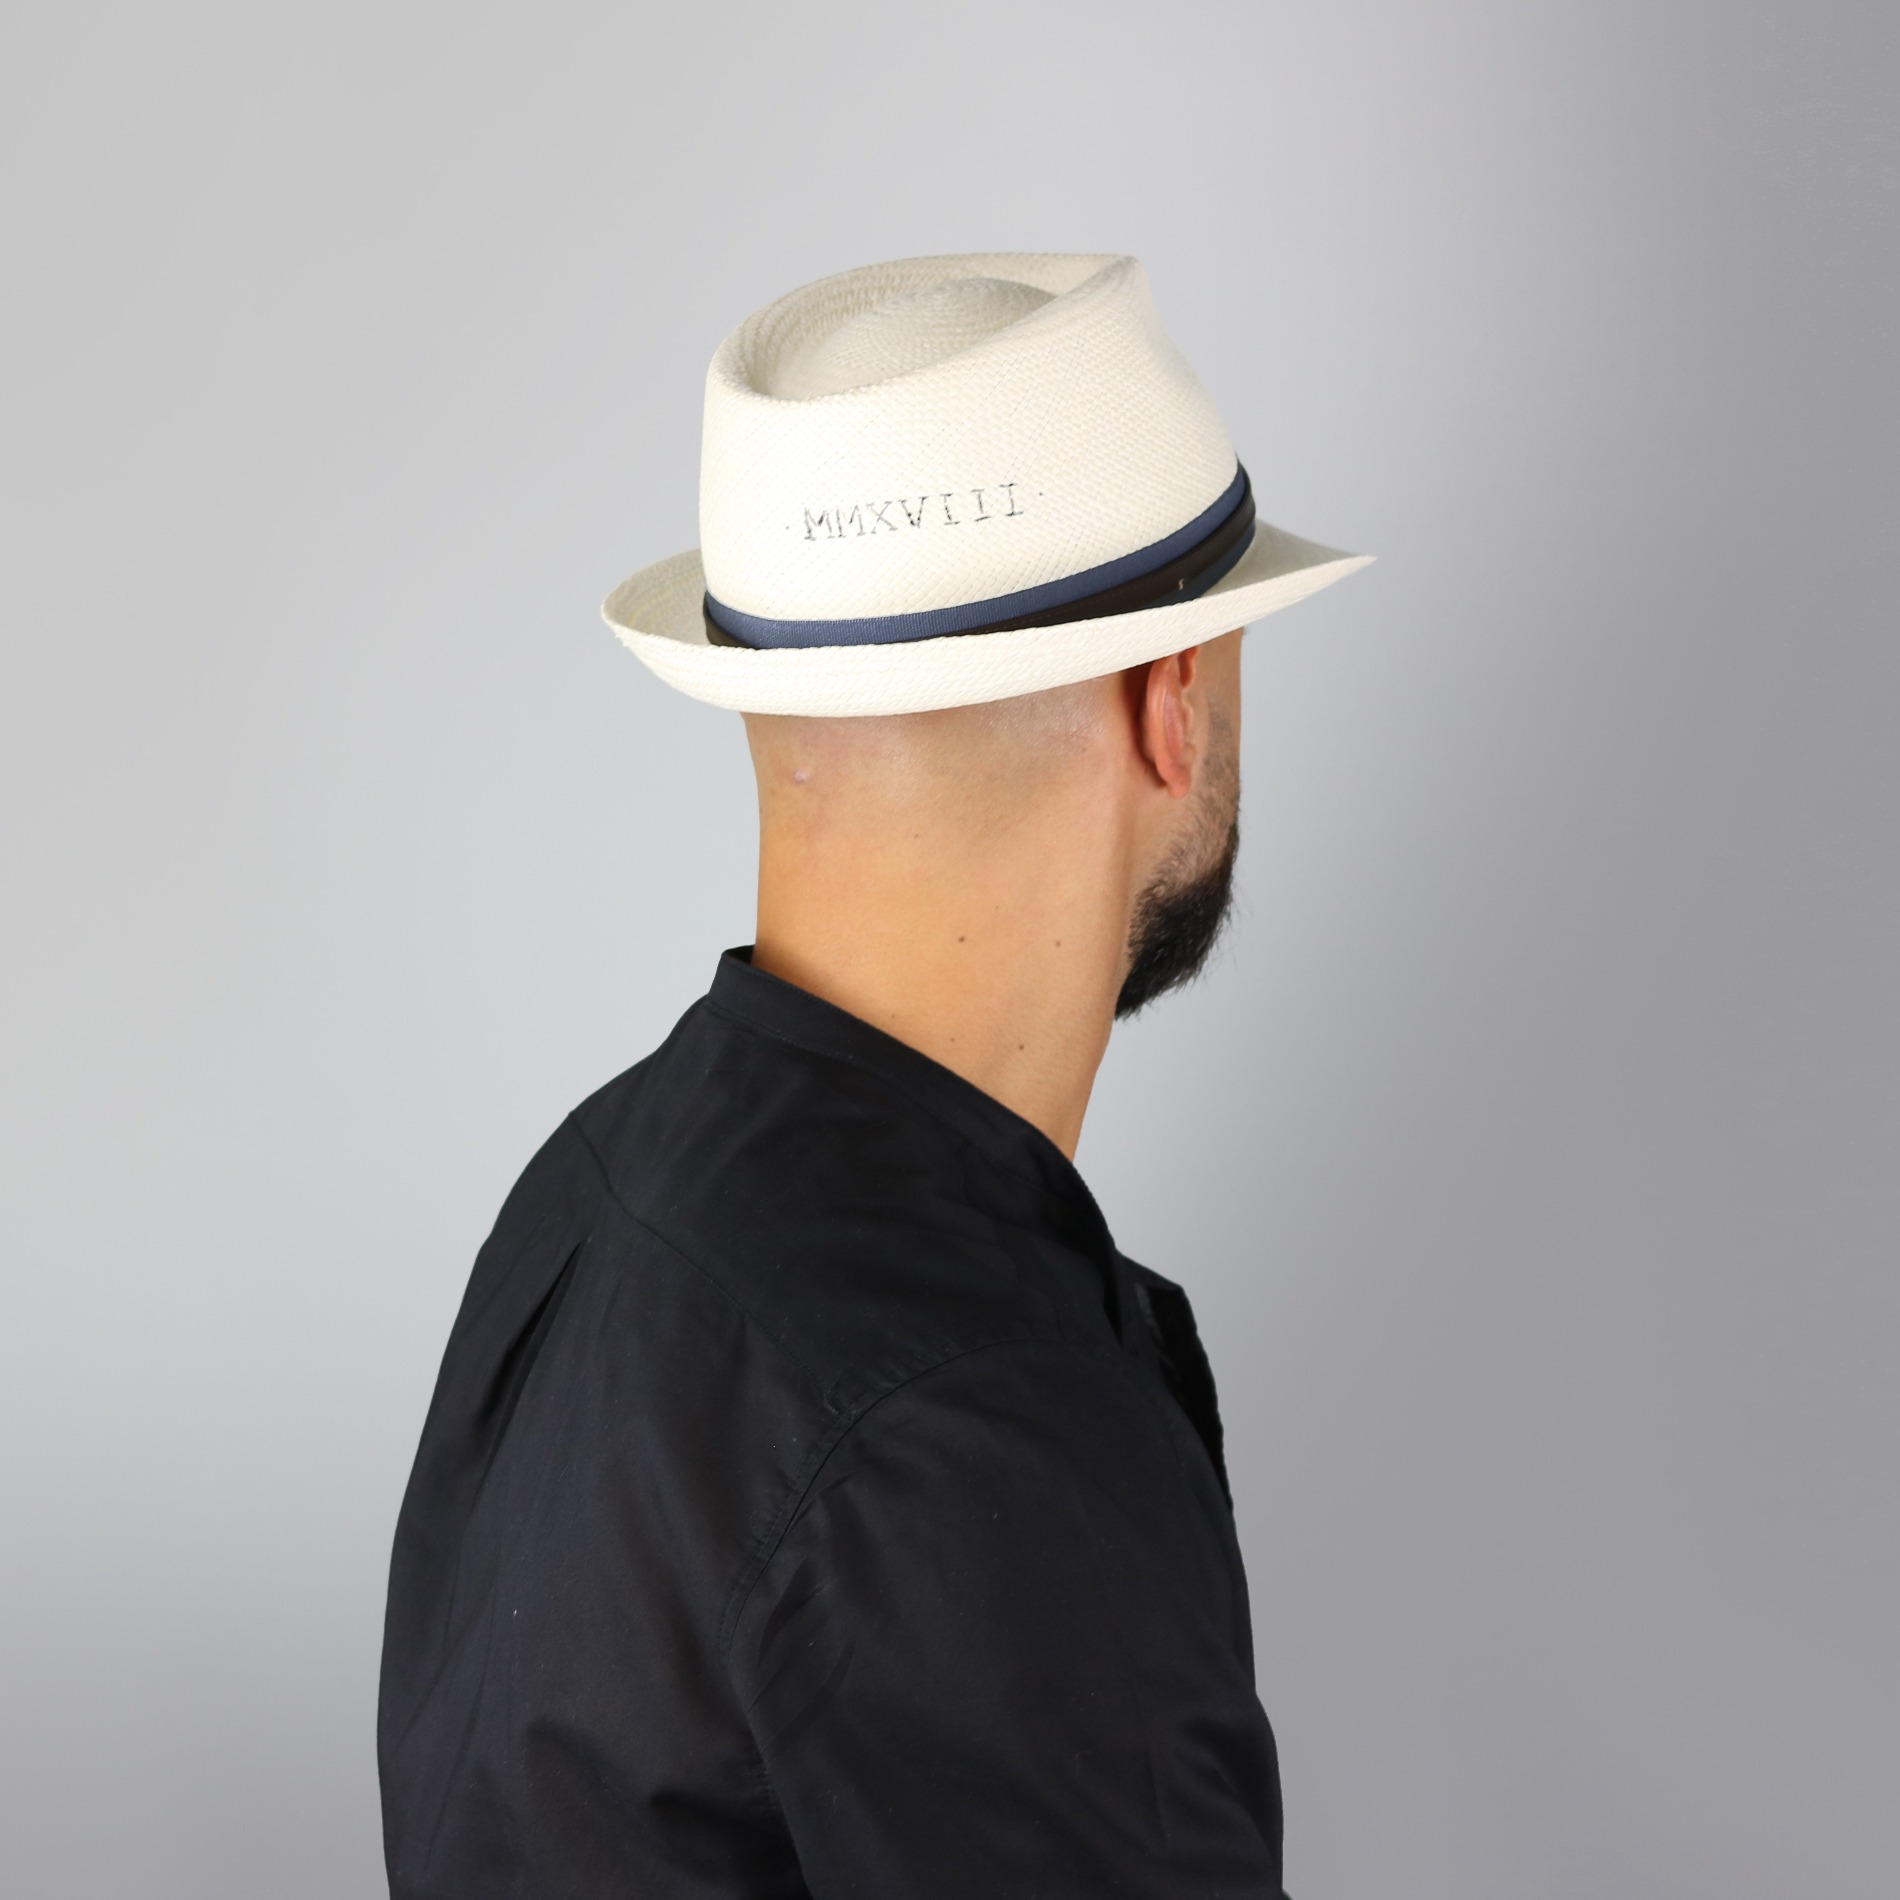 EOZY-Cappello Panama Vintage in Cotone Uomo Donna Unisex Fedora Classico Jazz Berretto Bump Top Stile Inglese 